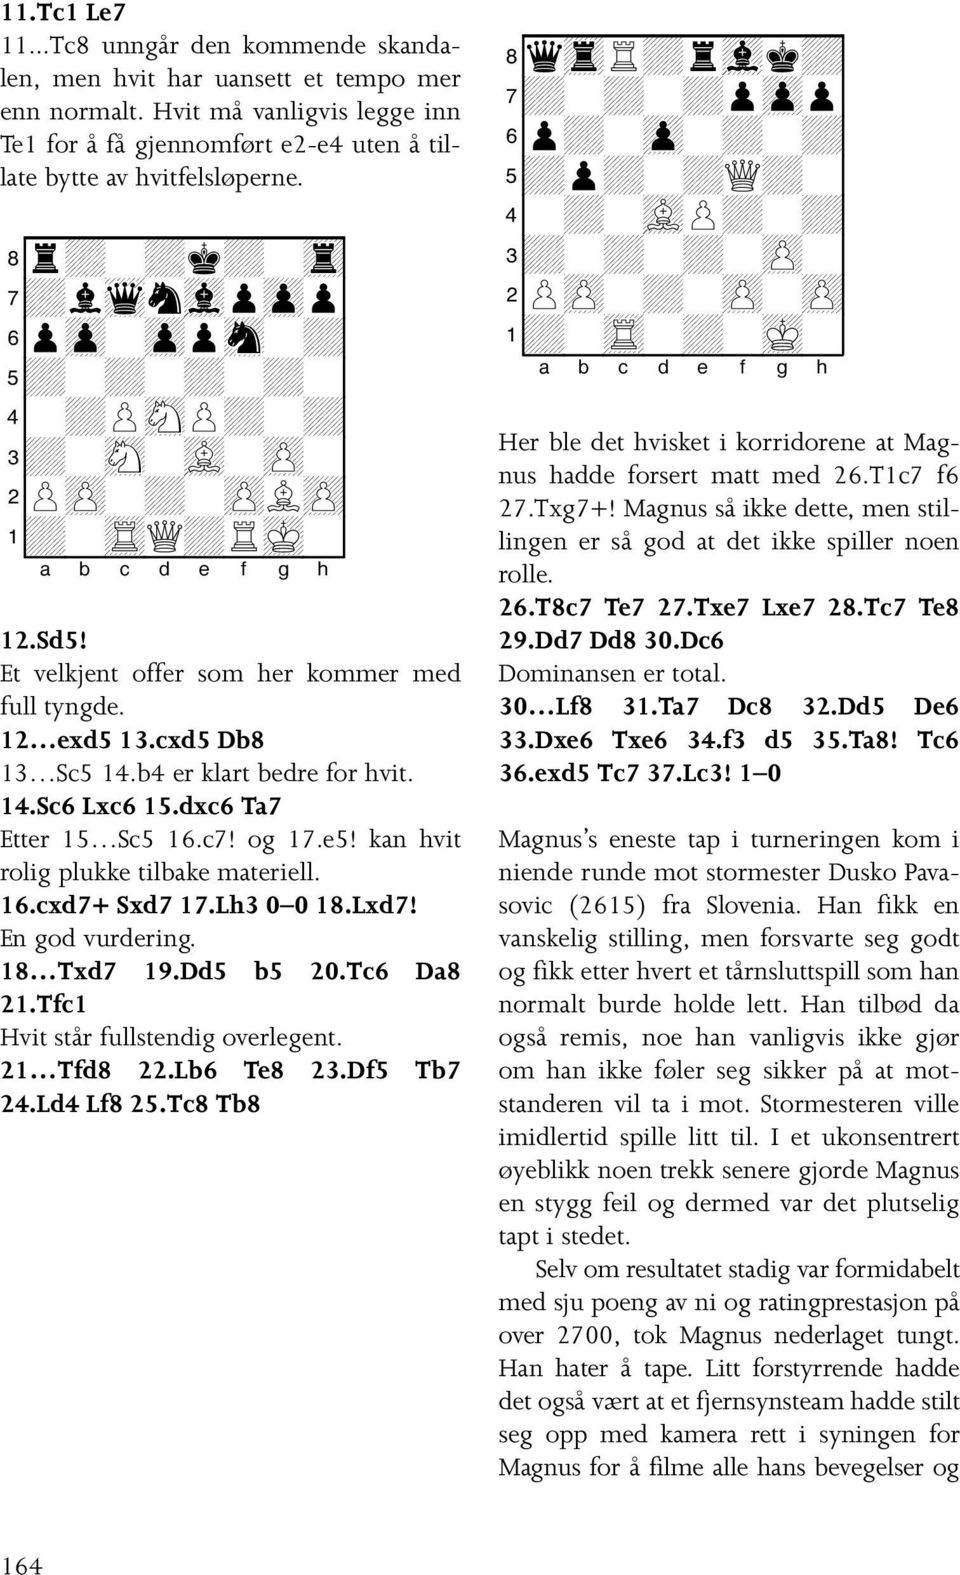 b4 er klart bedre for hvit. 14.Sc6 Lxc6 15.dxc6 Ta7 Etter 15 Sc5 16.c7! og 17.e5! kan hvit rolig plukke tilbake materiell. 16.cxd7+ Sxd7 17.Lh3 0 0 18.Lxd7! En god vurdering. 18 Txd7 19.Dd5 b5 20.